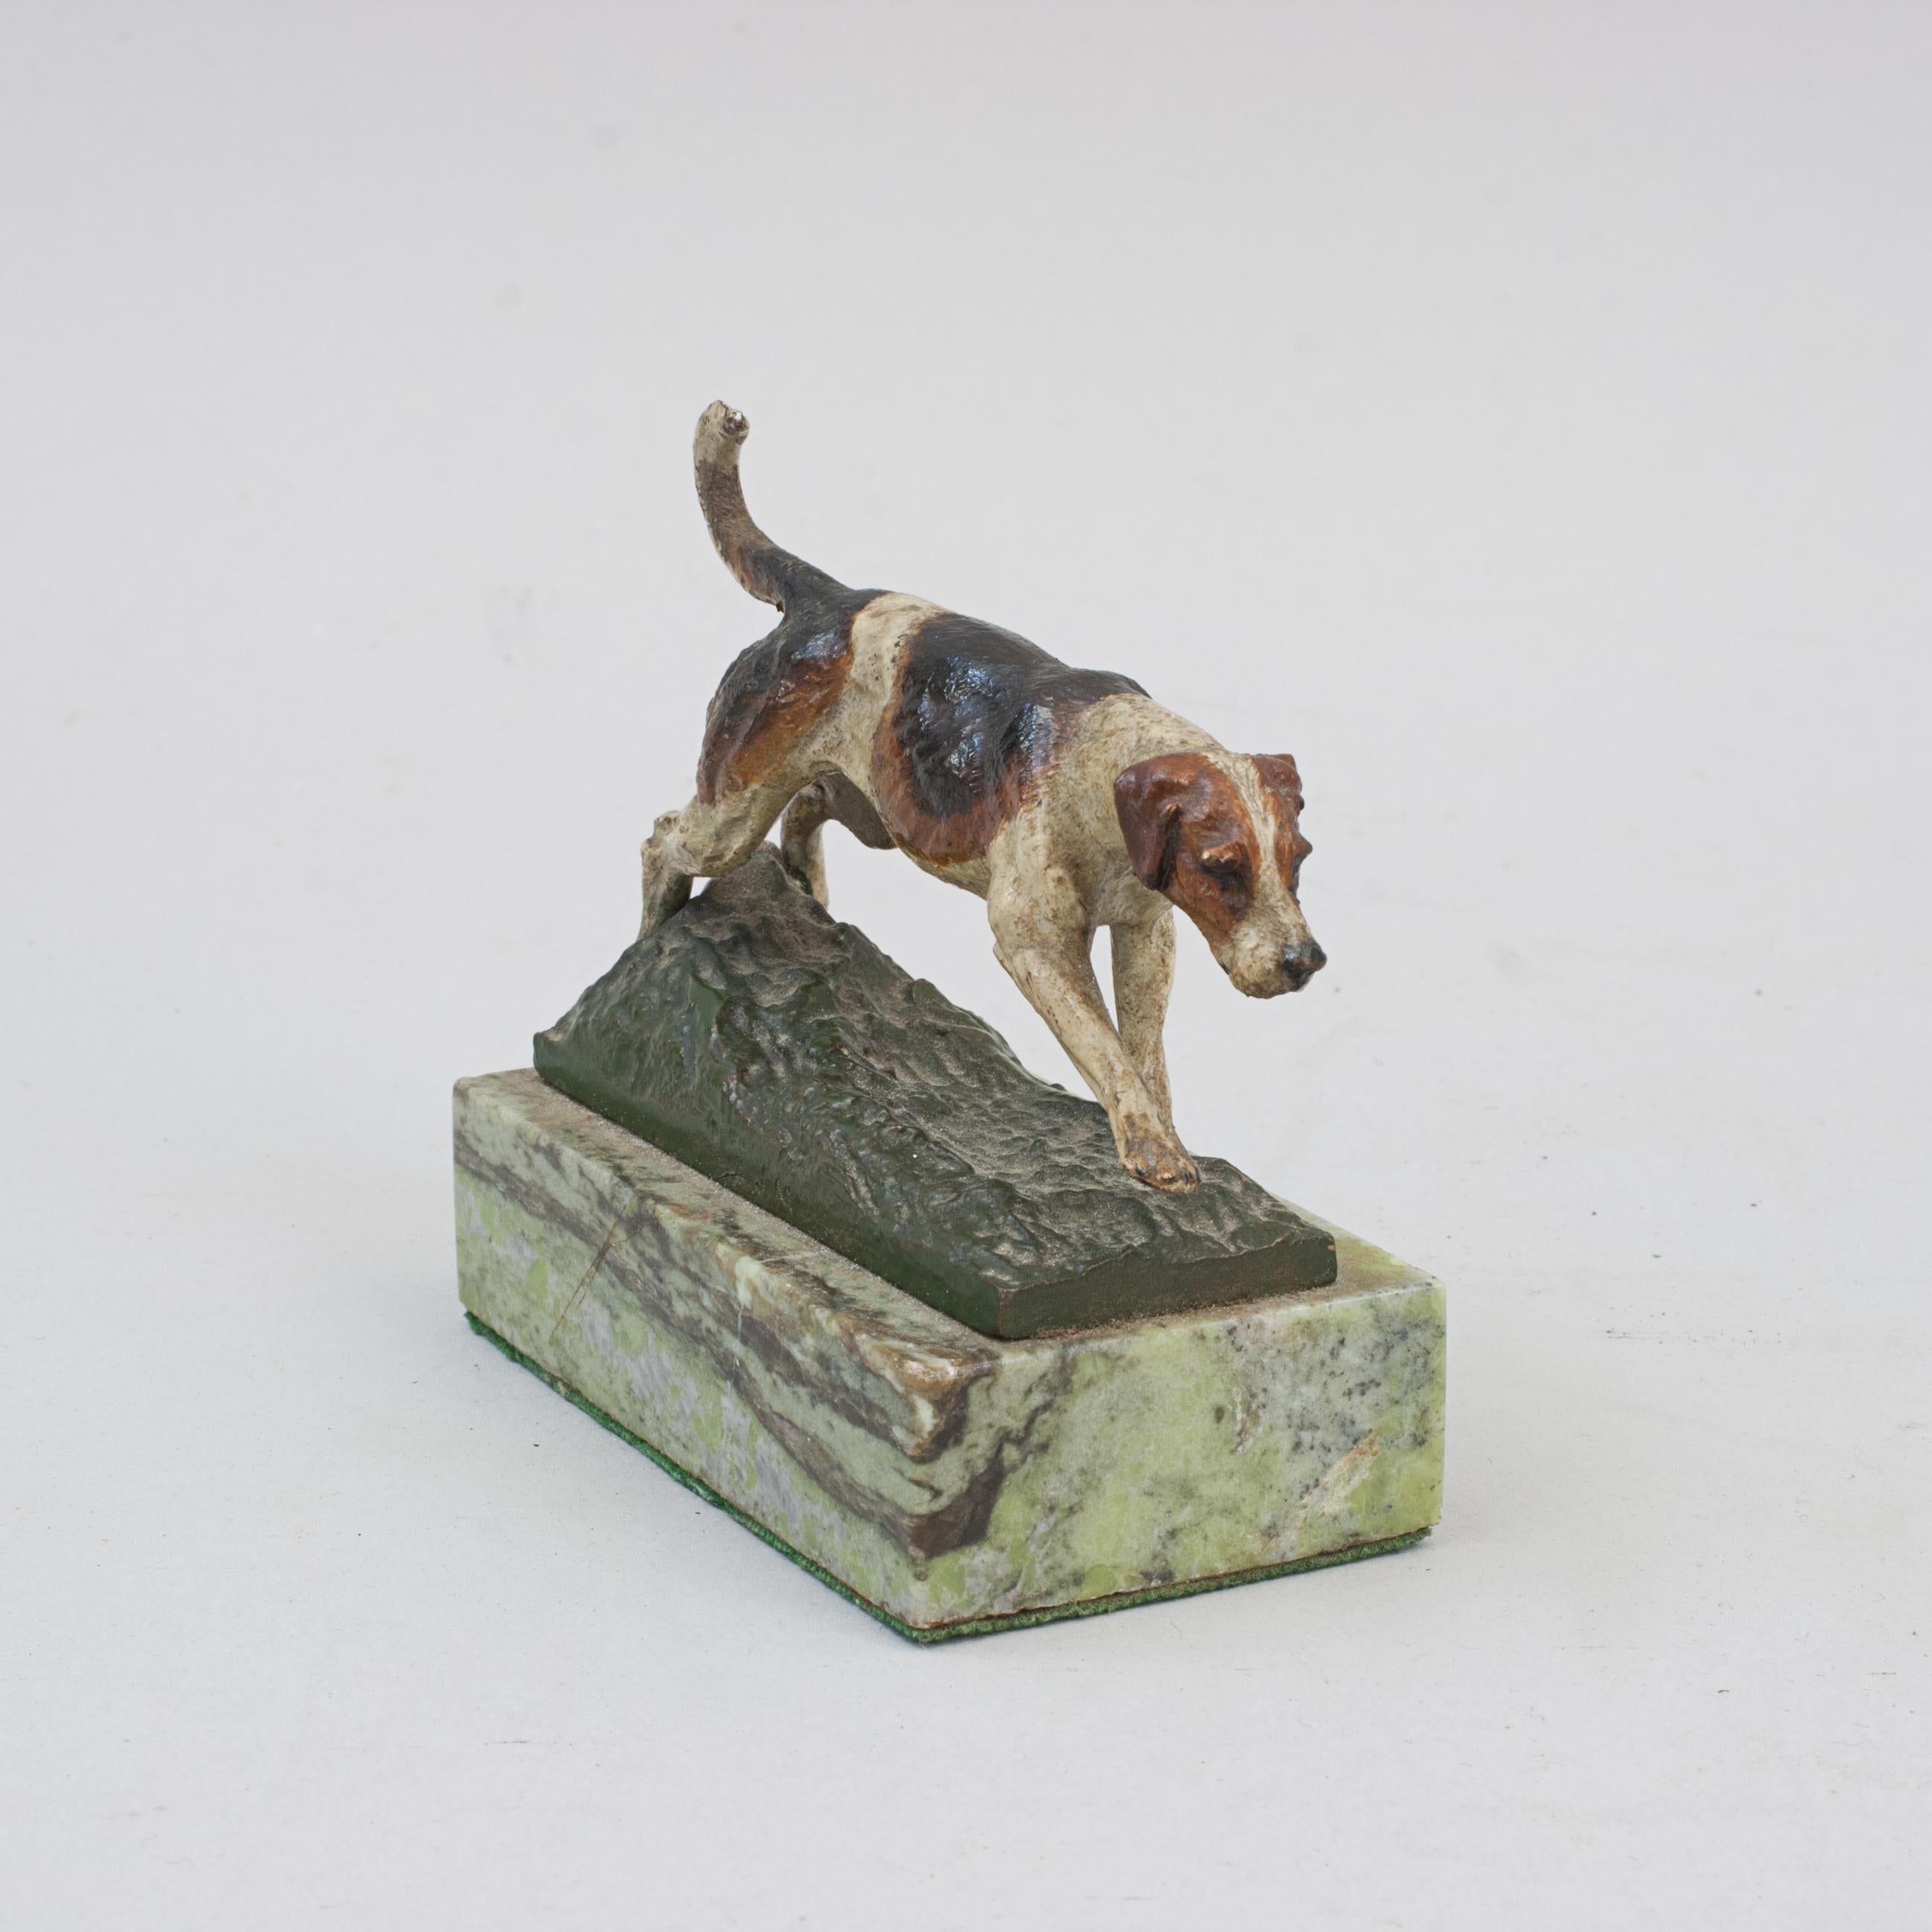 Foxhound antique en bronze de Vienne.
Une étude en bronze autrichien/viennois de haute qualité, peinte à froid, représentant un chien renard. Le chien de chasse est bien moulé et peint, mais la queue présente une légère perte de peinture. Monté sur